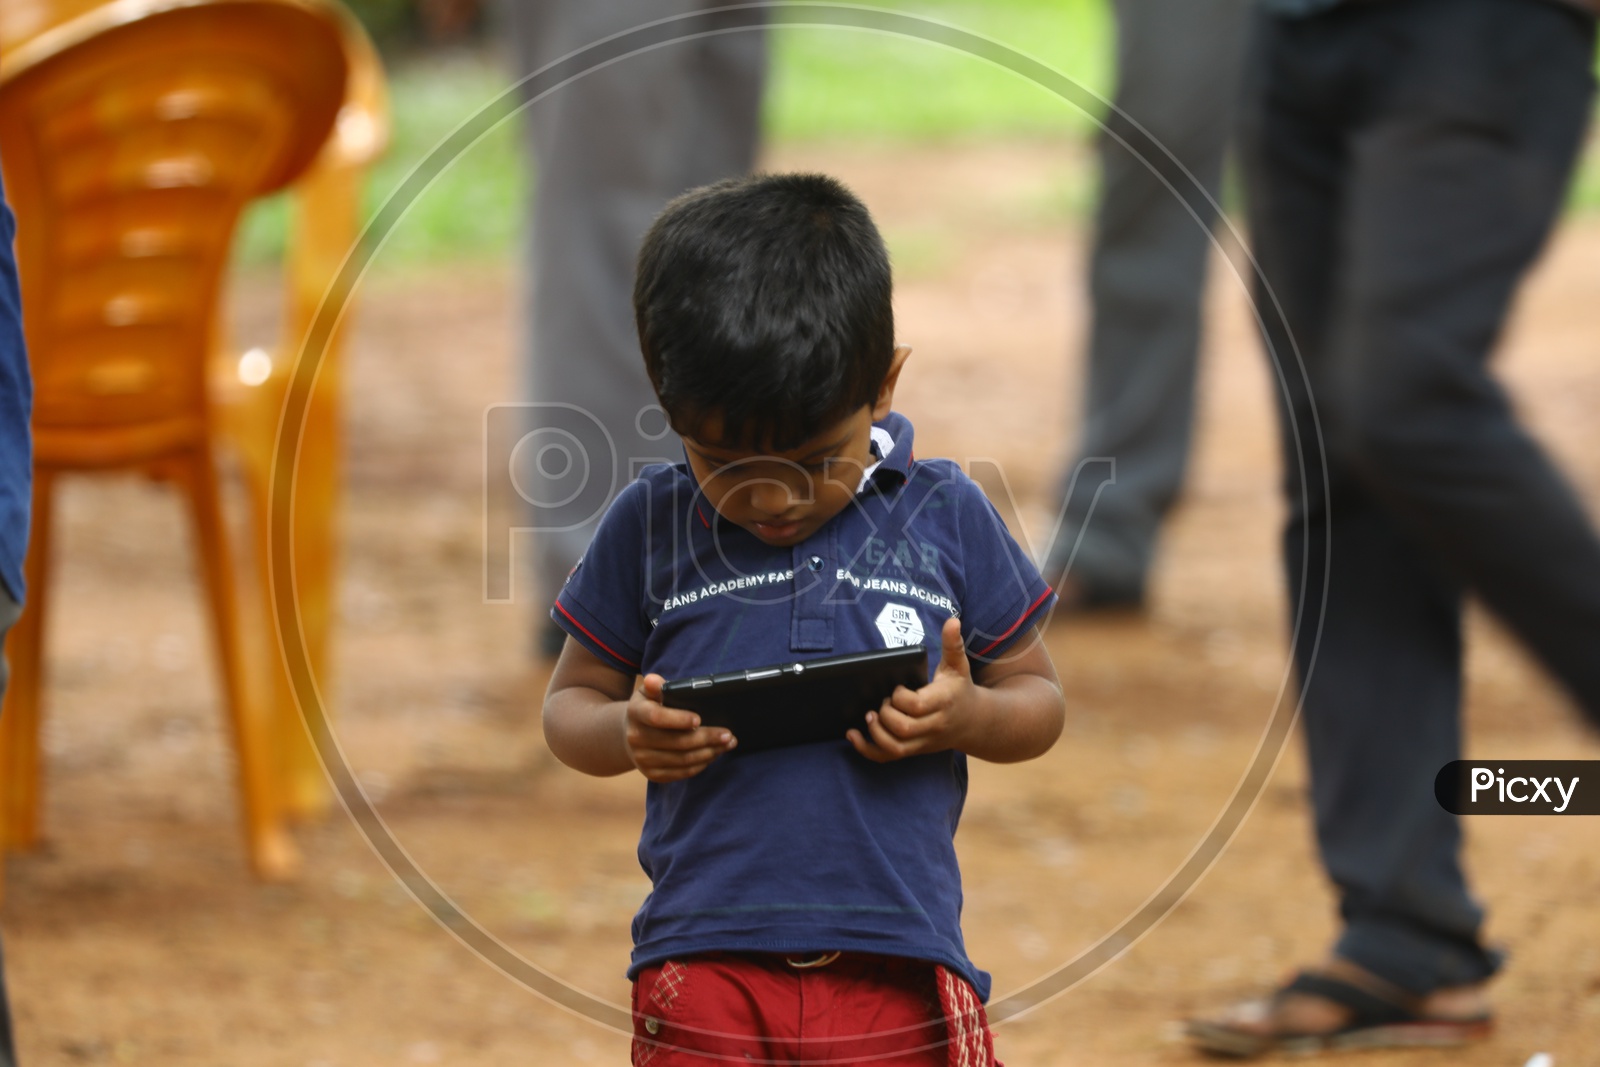 An Indian little boy using a smartphone